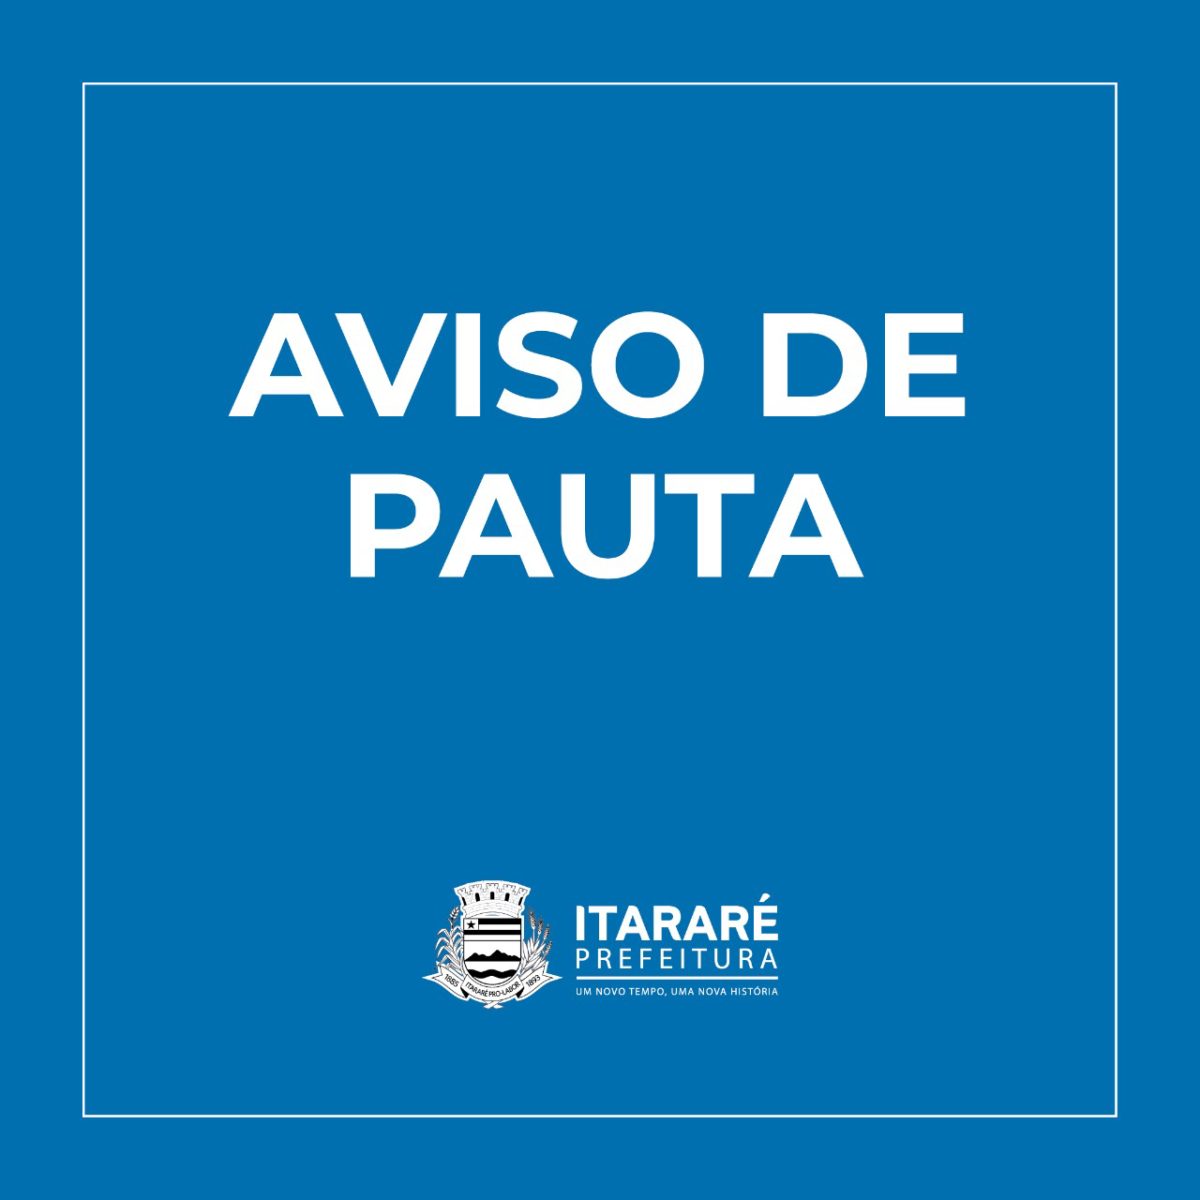 AVISO DE PAUTA: Prefeito de Itararé (SP) entrega kits de material escolar nesta quinta-feira (09)